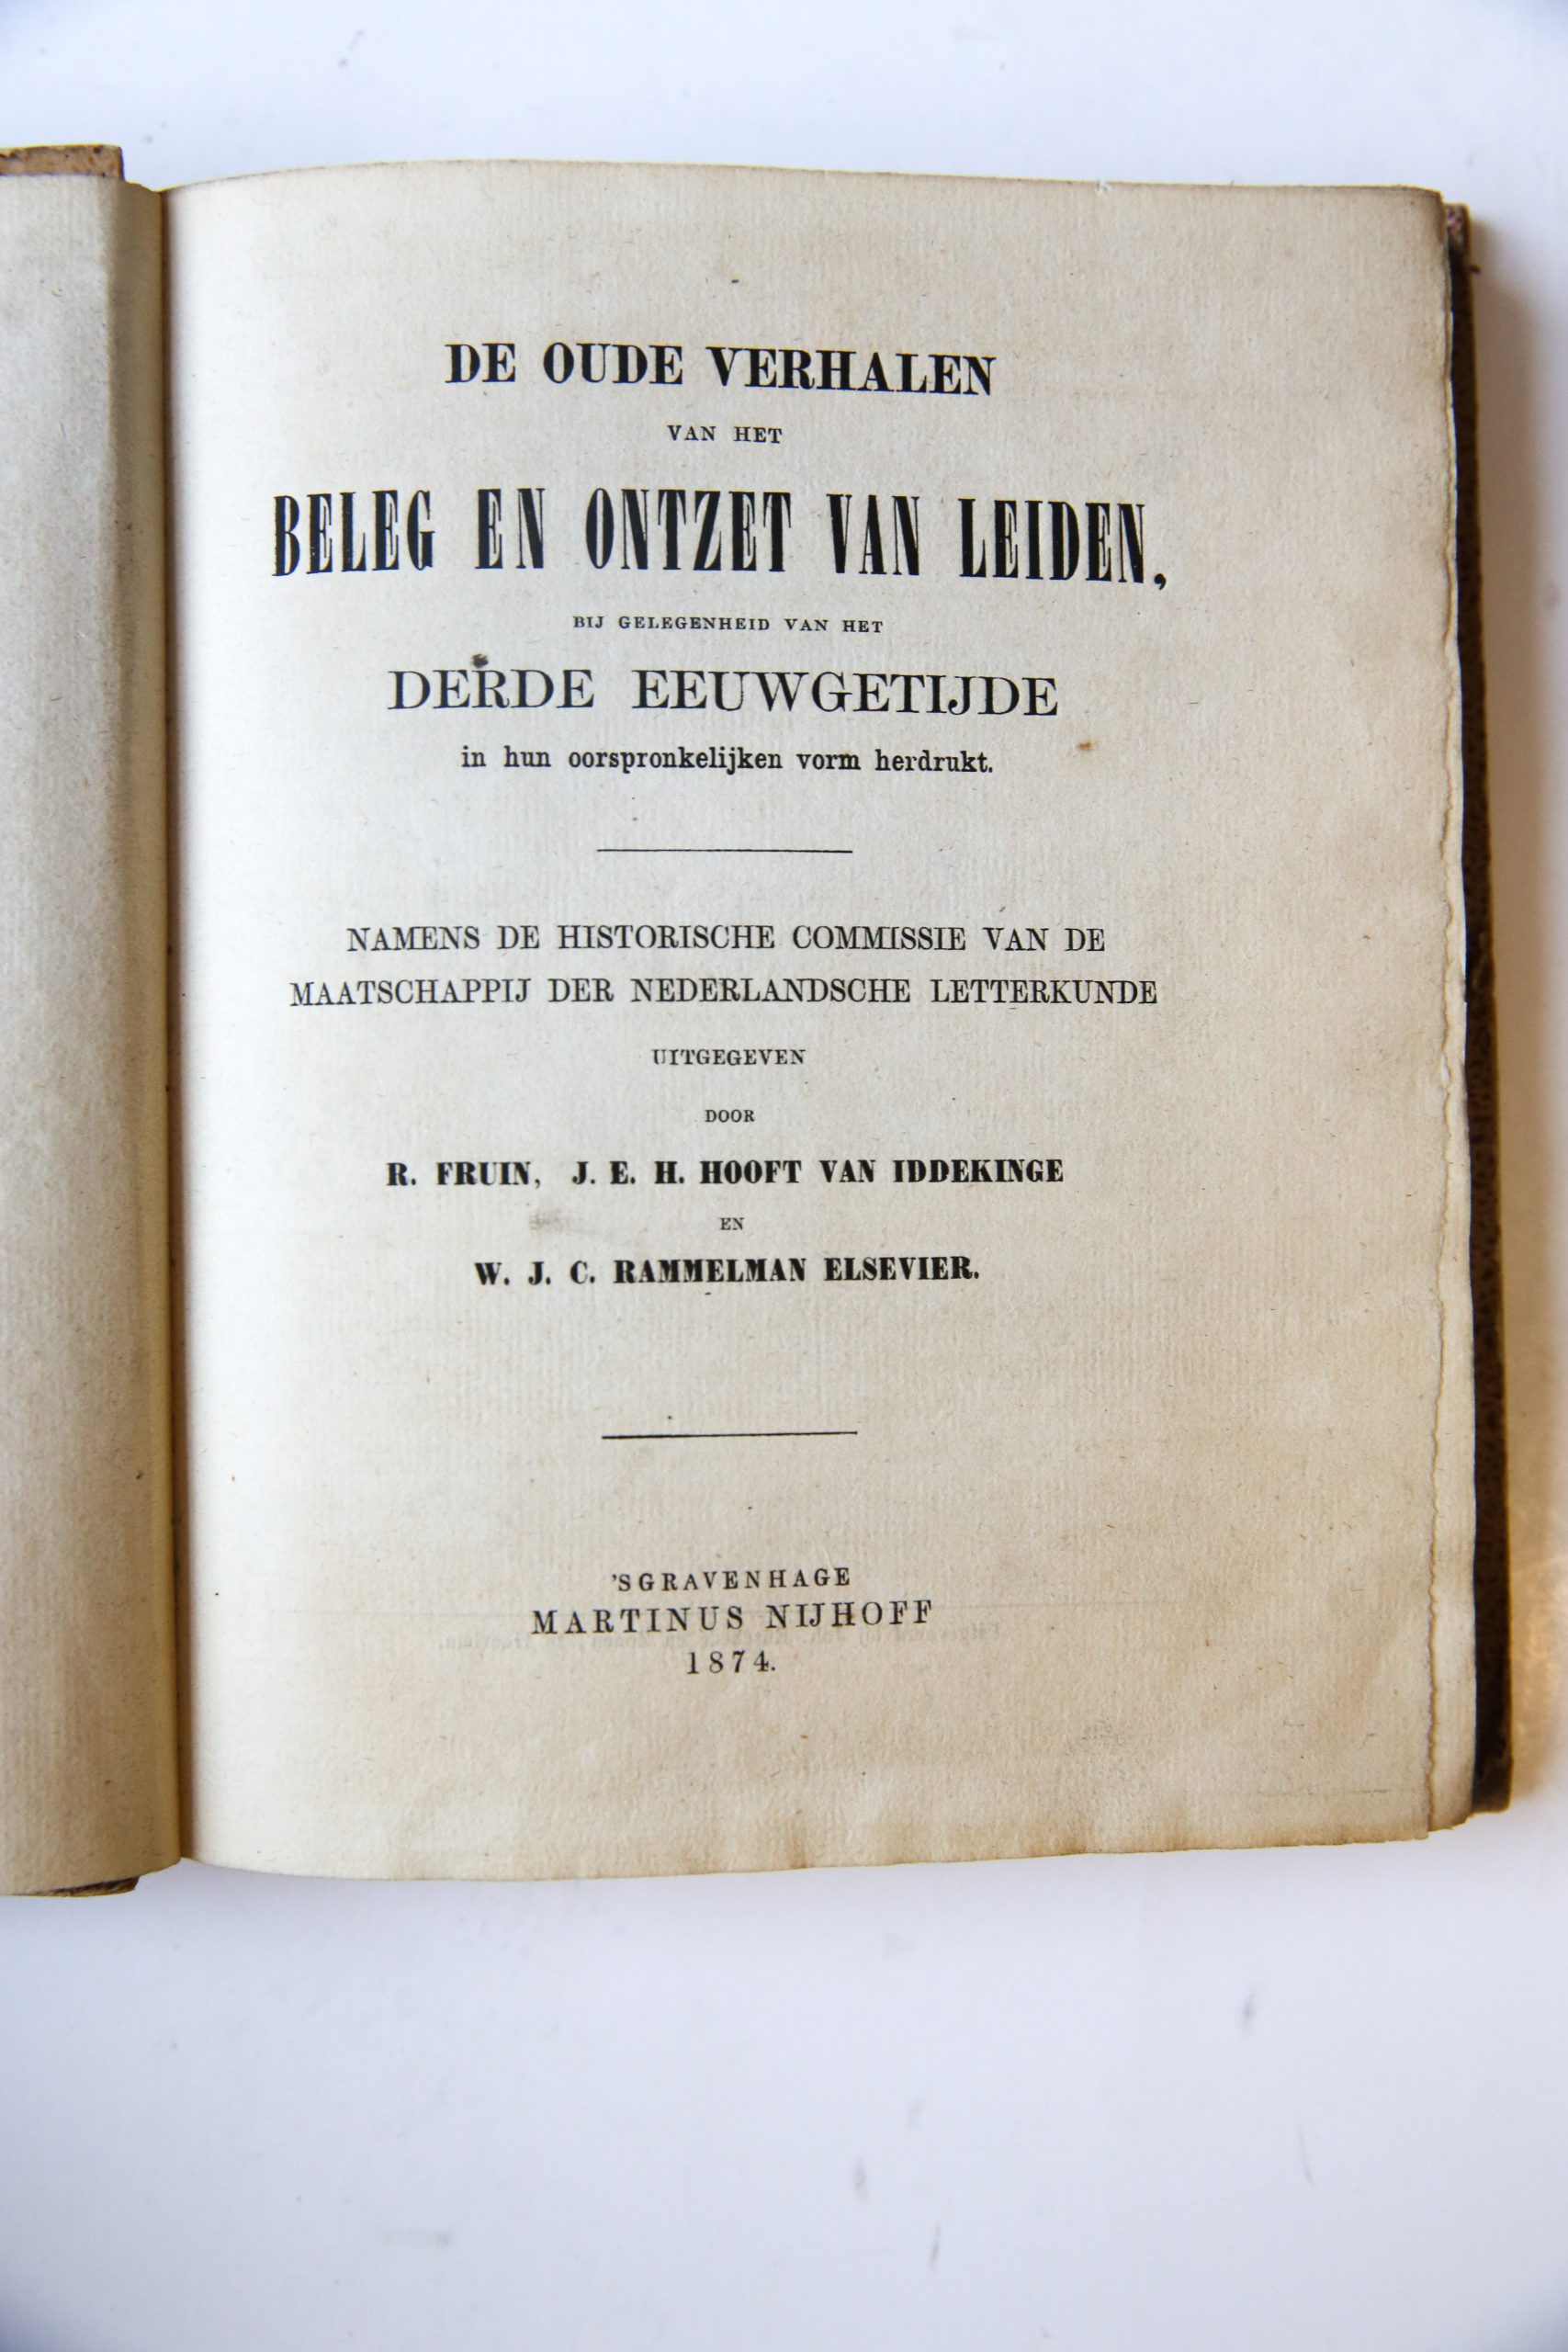 De oude verhalen van het beleg en ontzet van Leiden (......) in hun oorspronkelijke vorm herdrukt, 's-Gravenhage 1874, half linnen band.